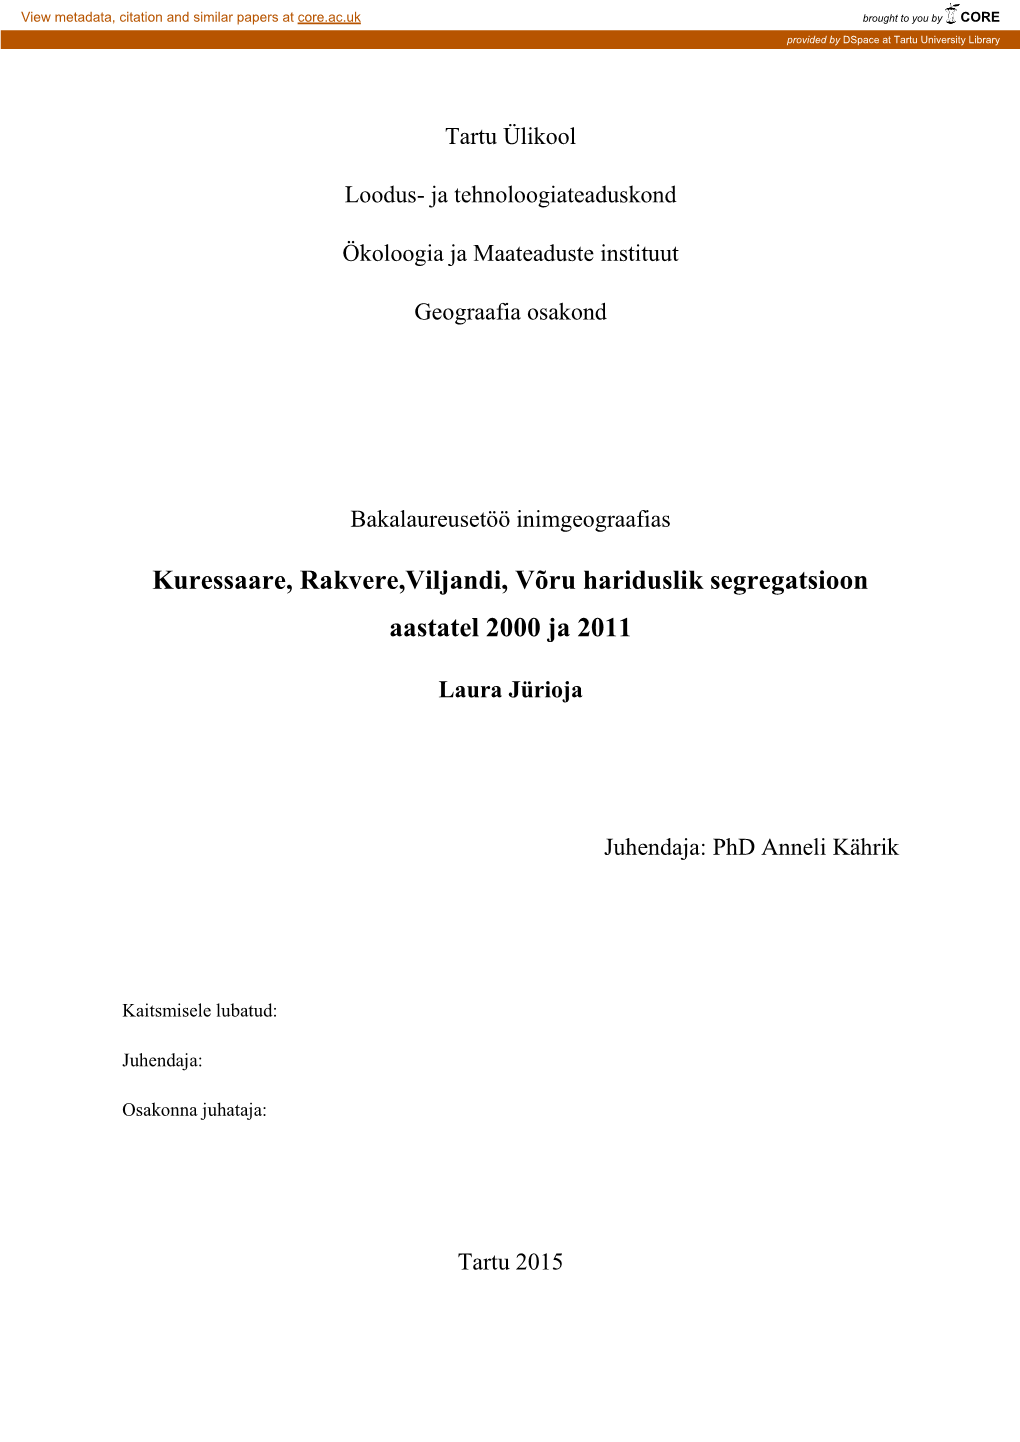 Kuressaare, Rakvere,Viljandi, Võru Hariduslik Segregatsioon Aastatel 2000 Ja 2011